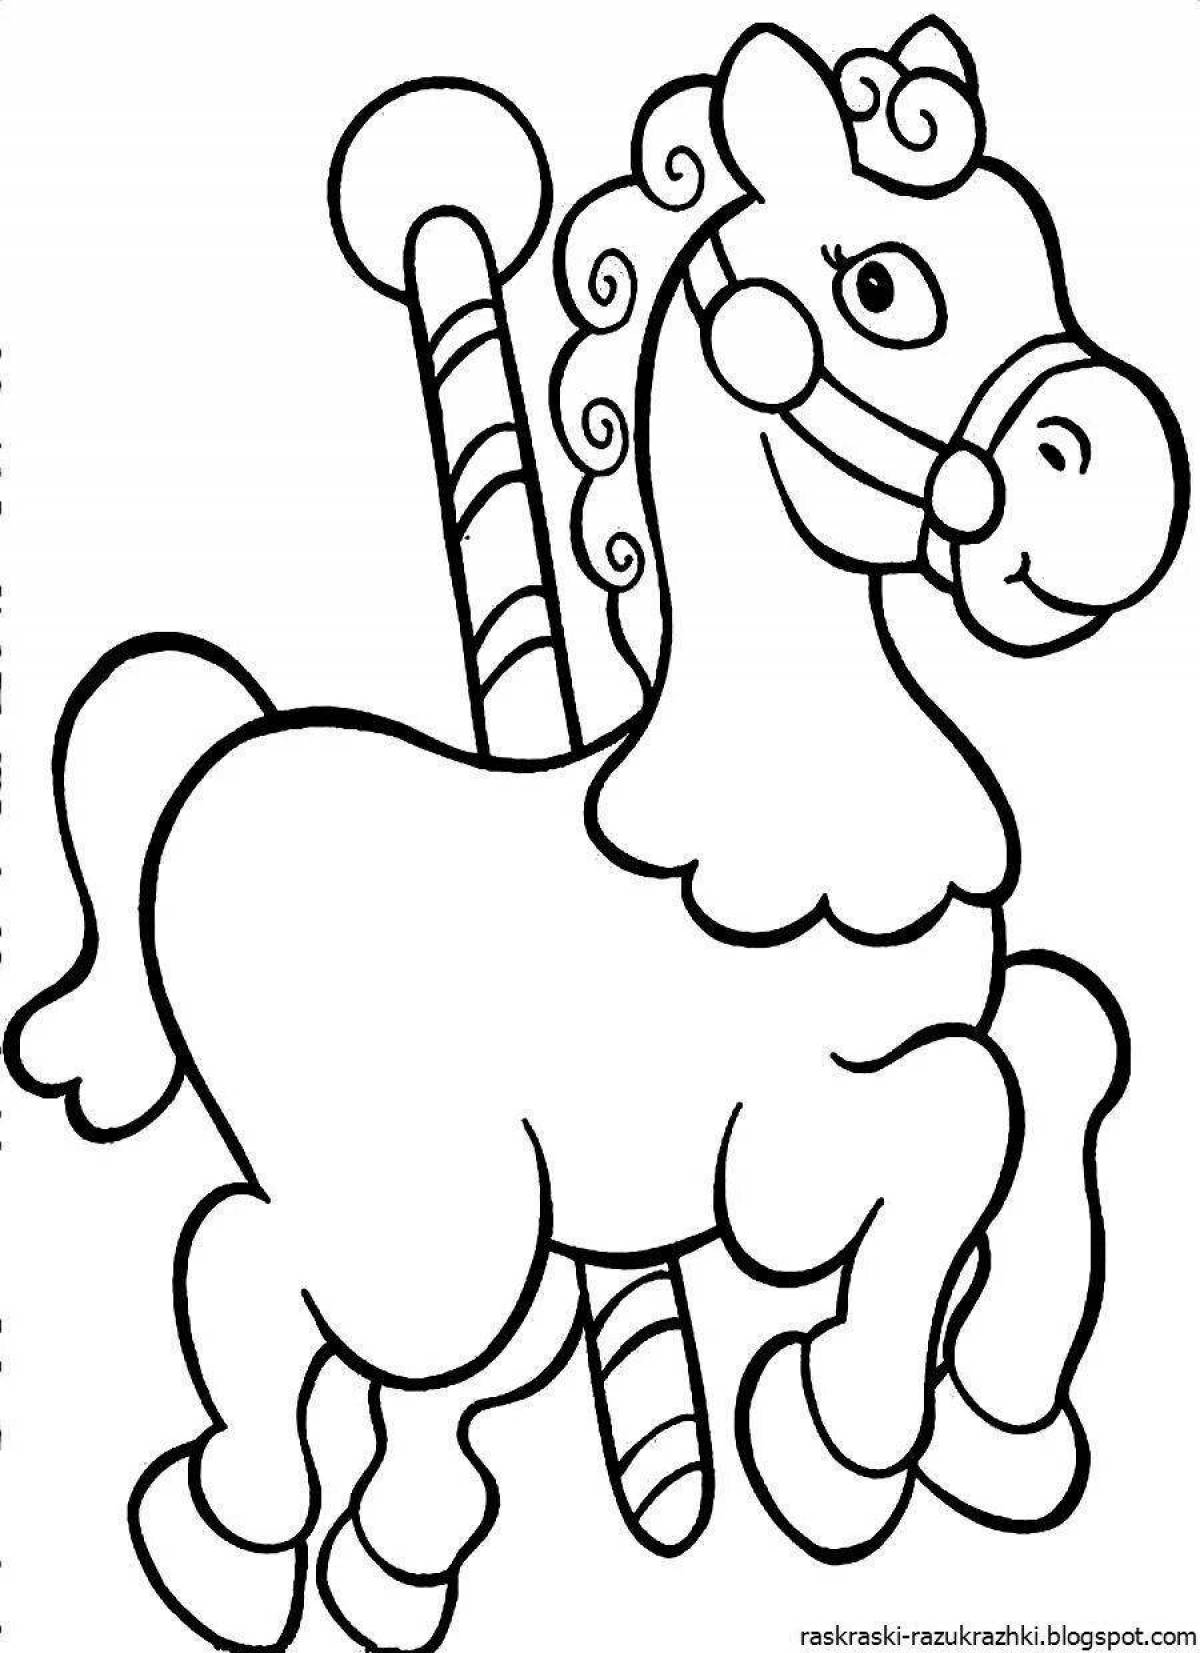 Яркая раскраска лошадей для детей 2-3 лет